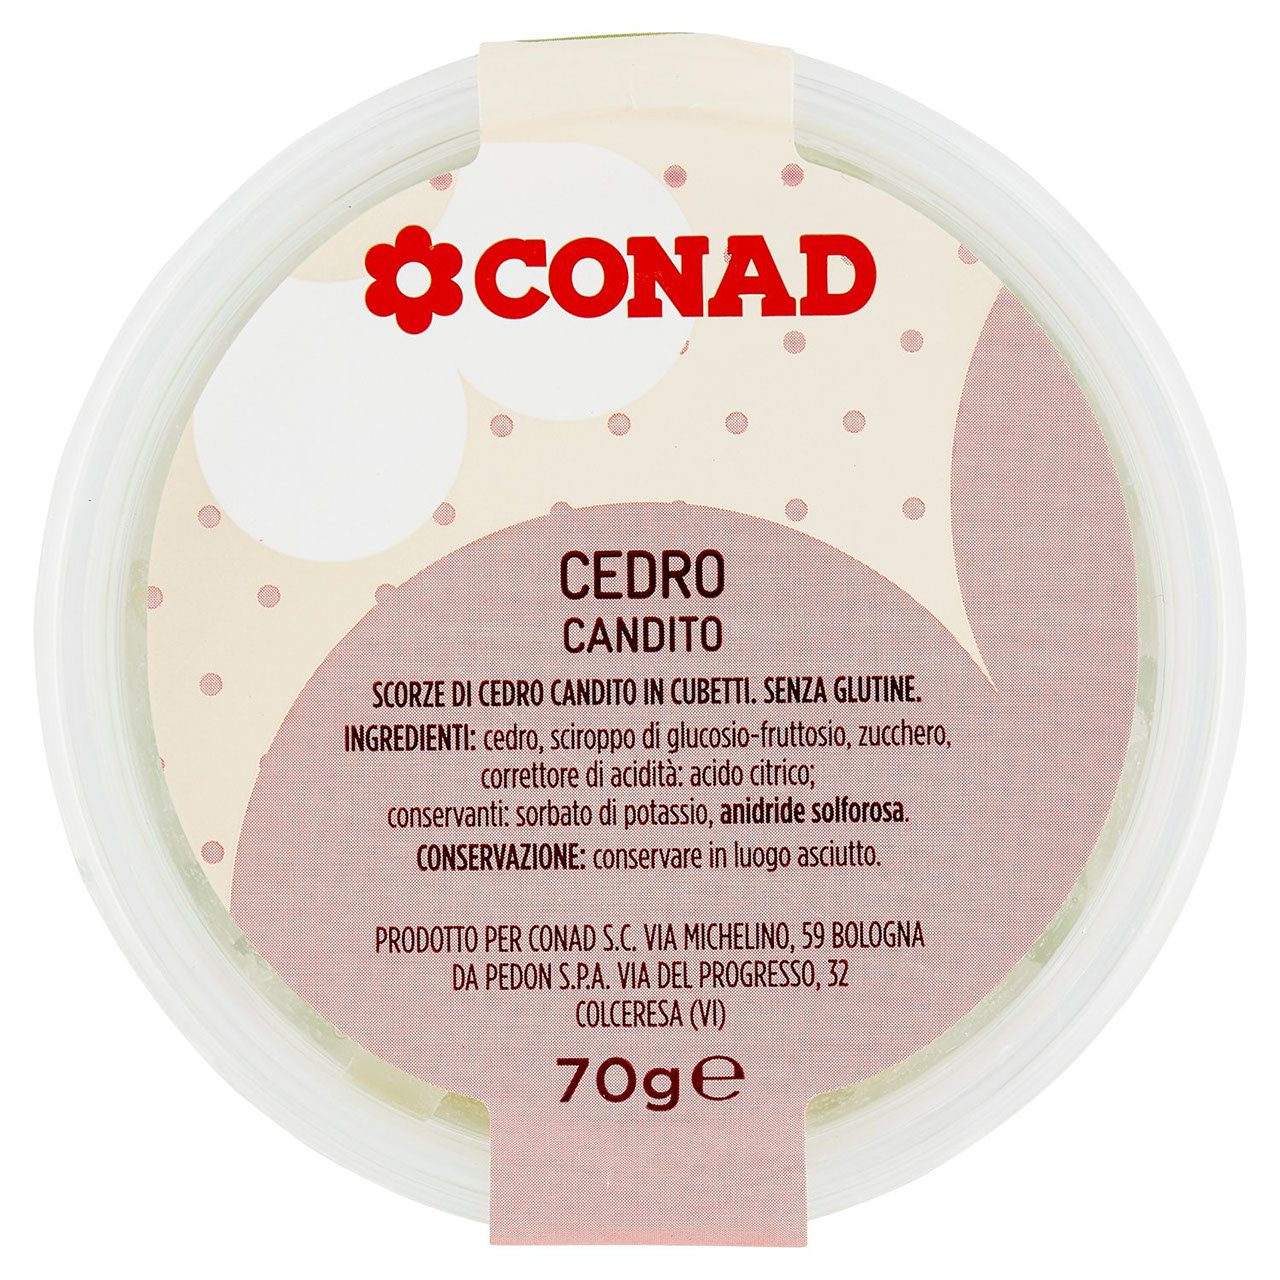 Cedro Candito 70 g Conad in vendita online